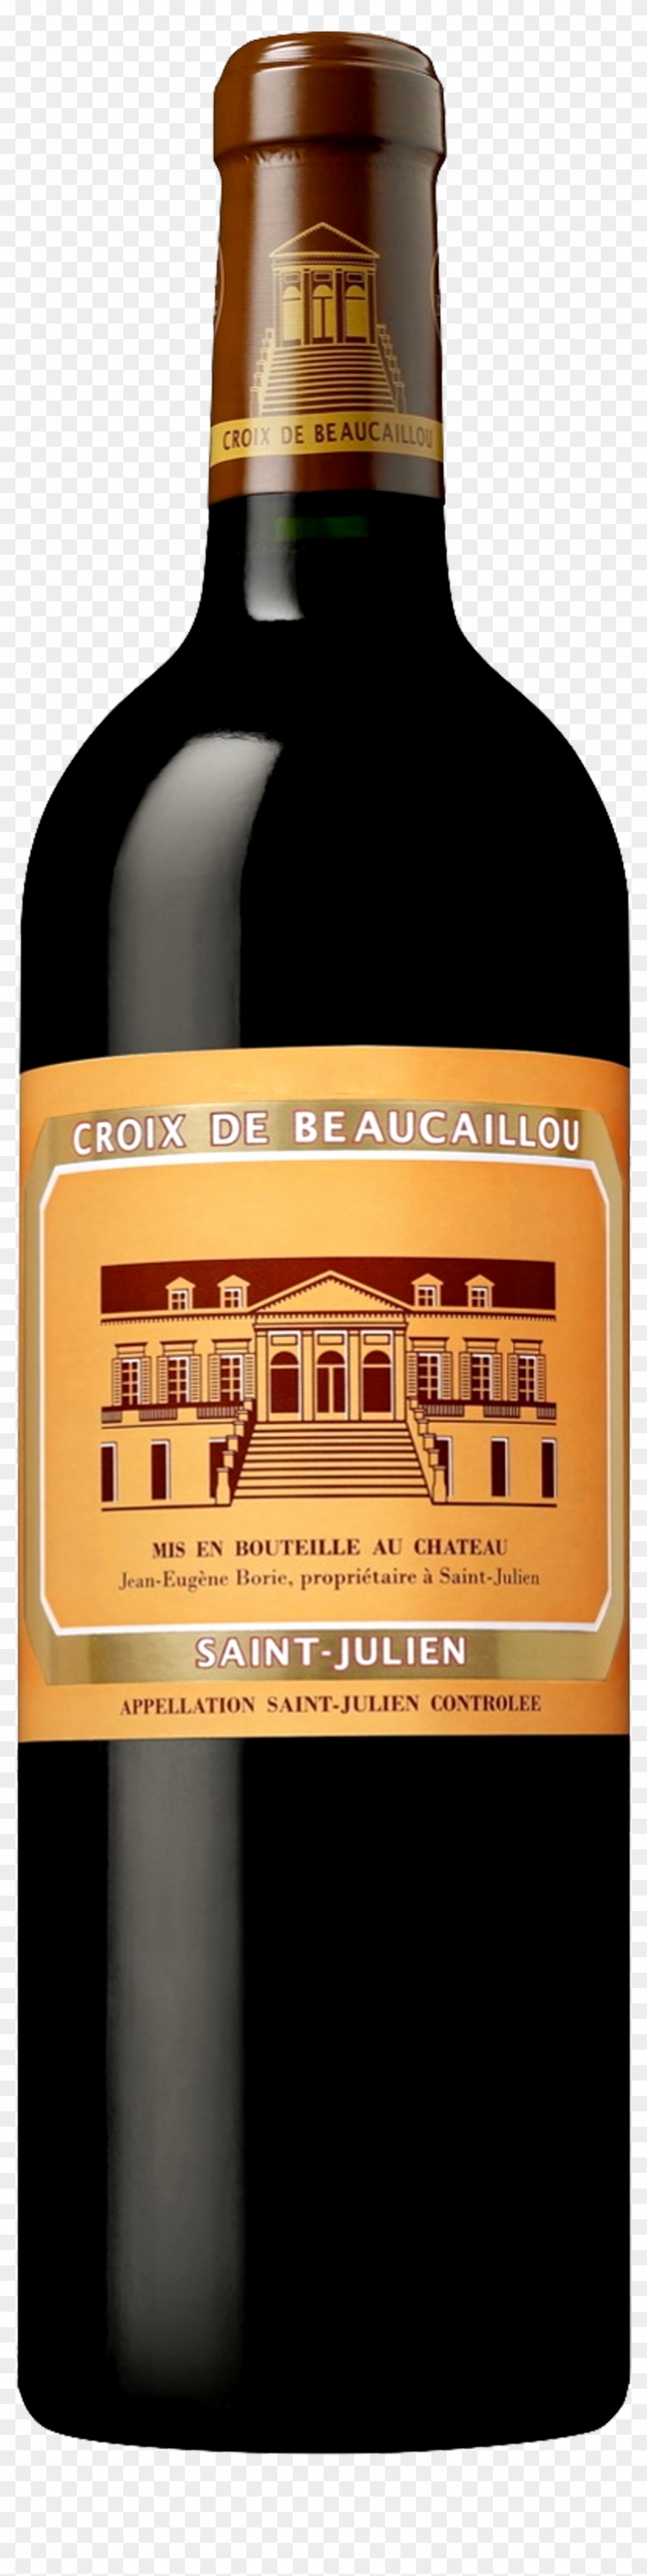 Image Of Product La Croix De Beaucaillou, St Julien - Château Ducru Beaucaillou Croix De Beaucaillou Clipart #5736866